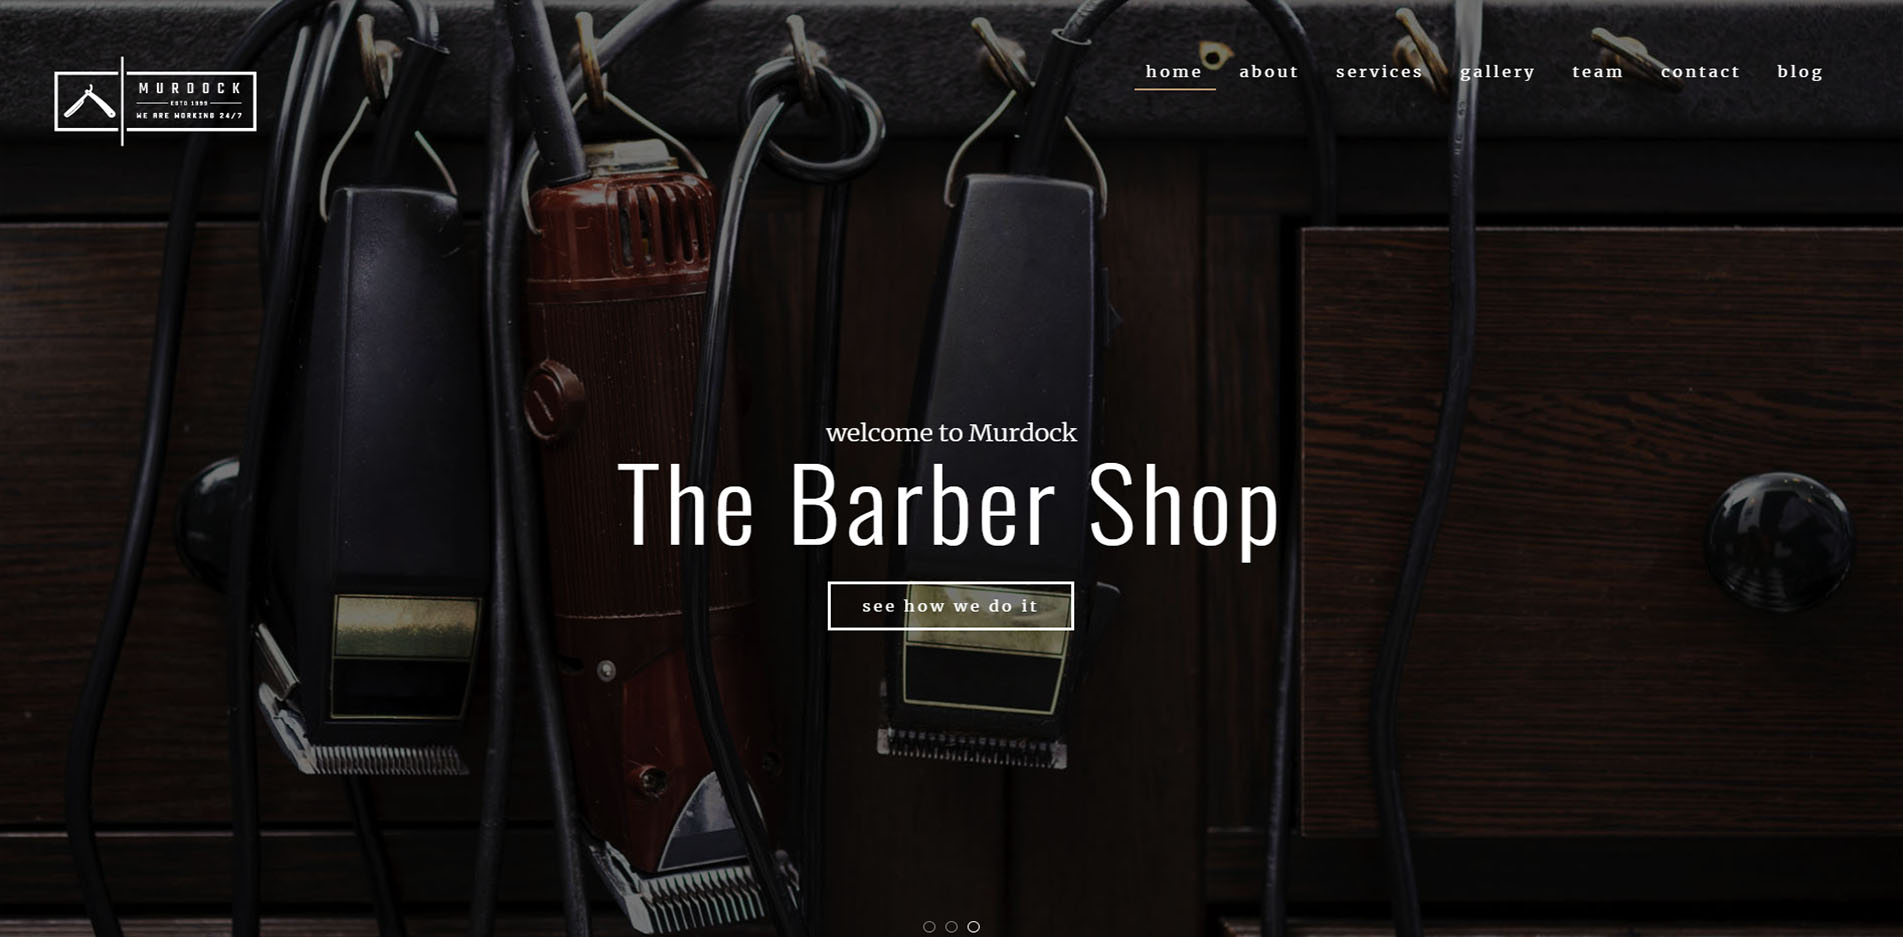 Barber Shop Website Design #9